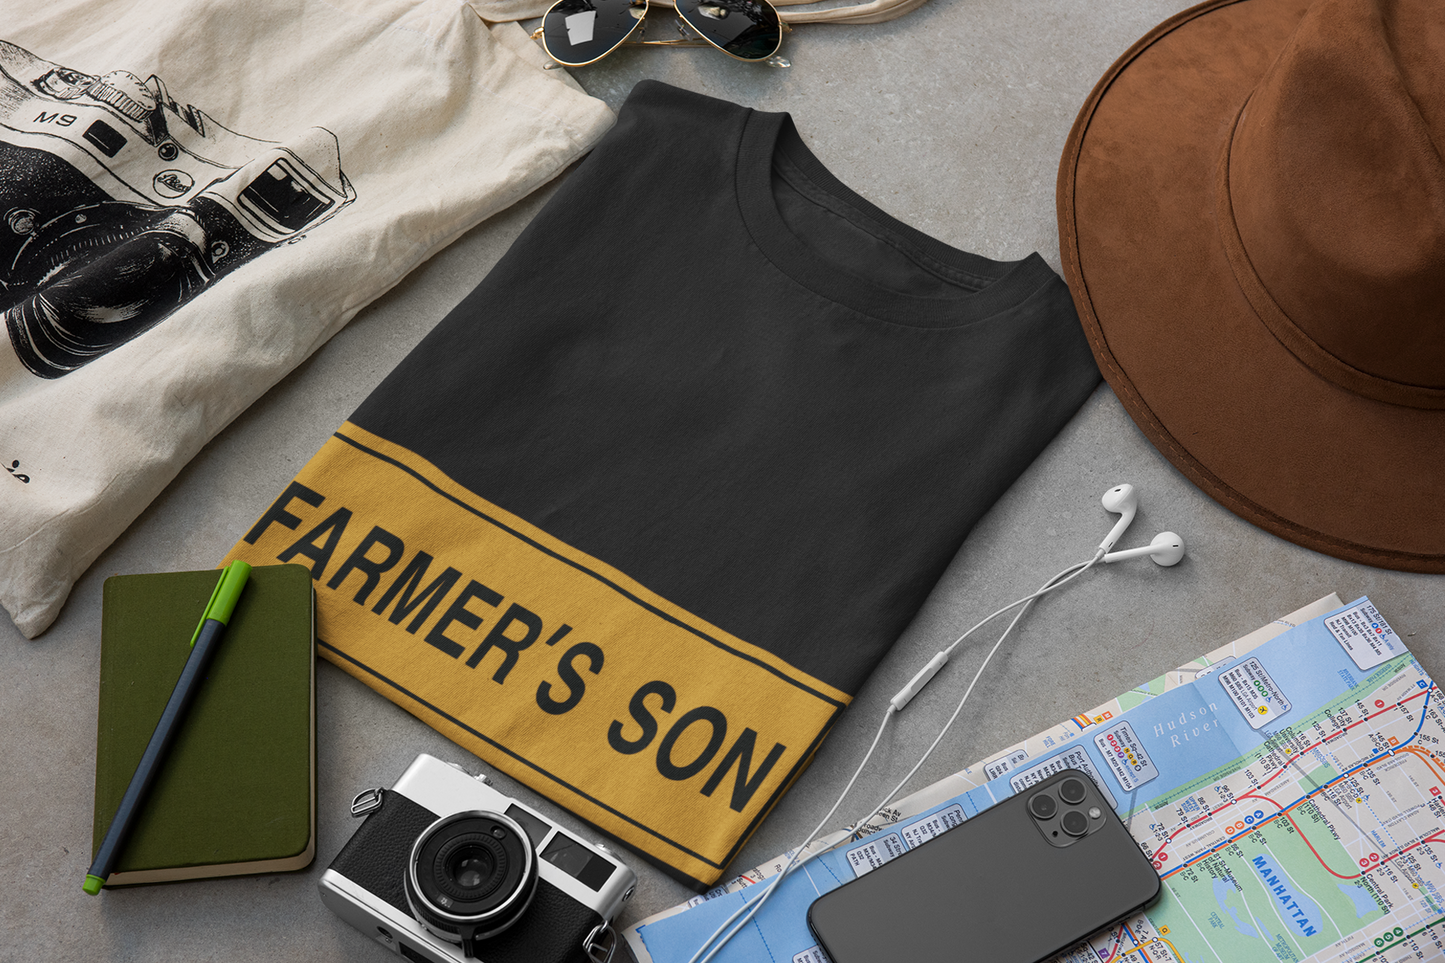 Farmer’s son T-shirt